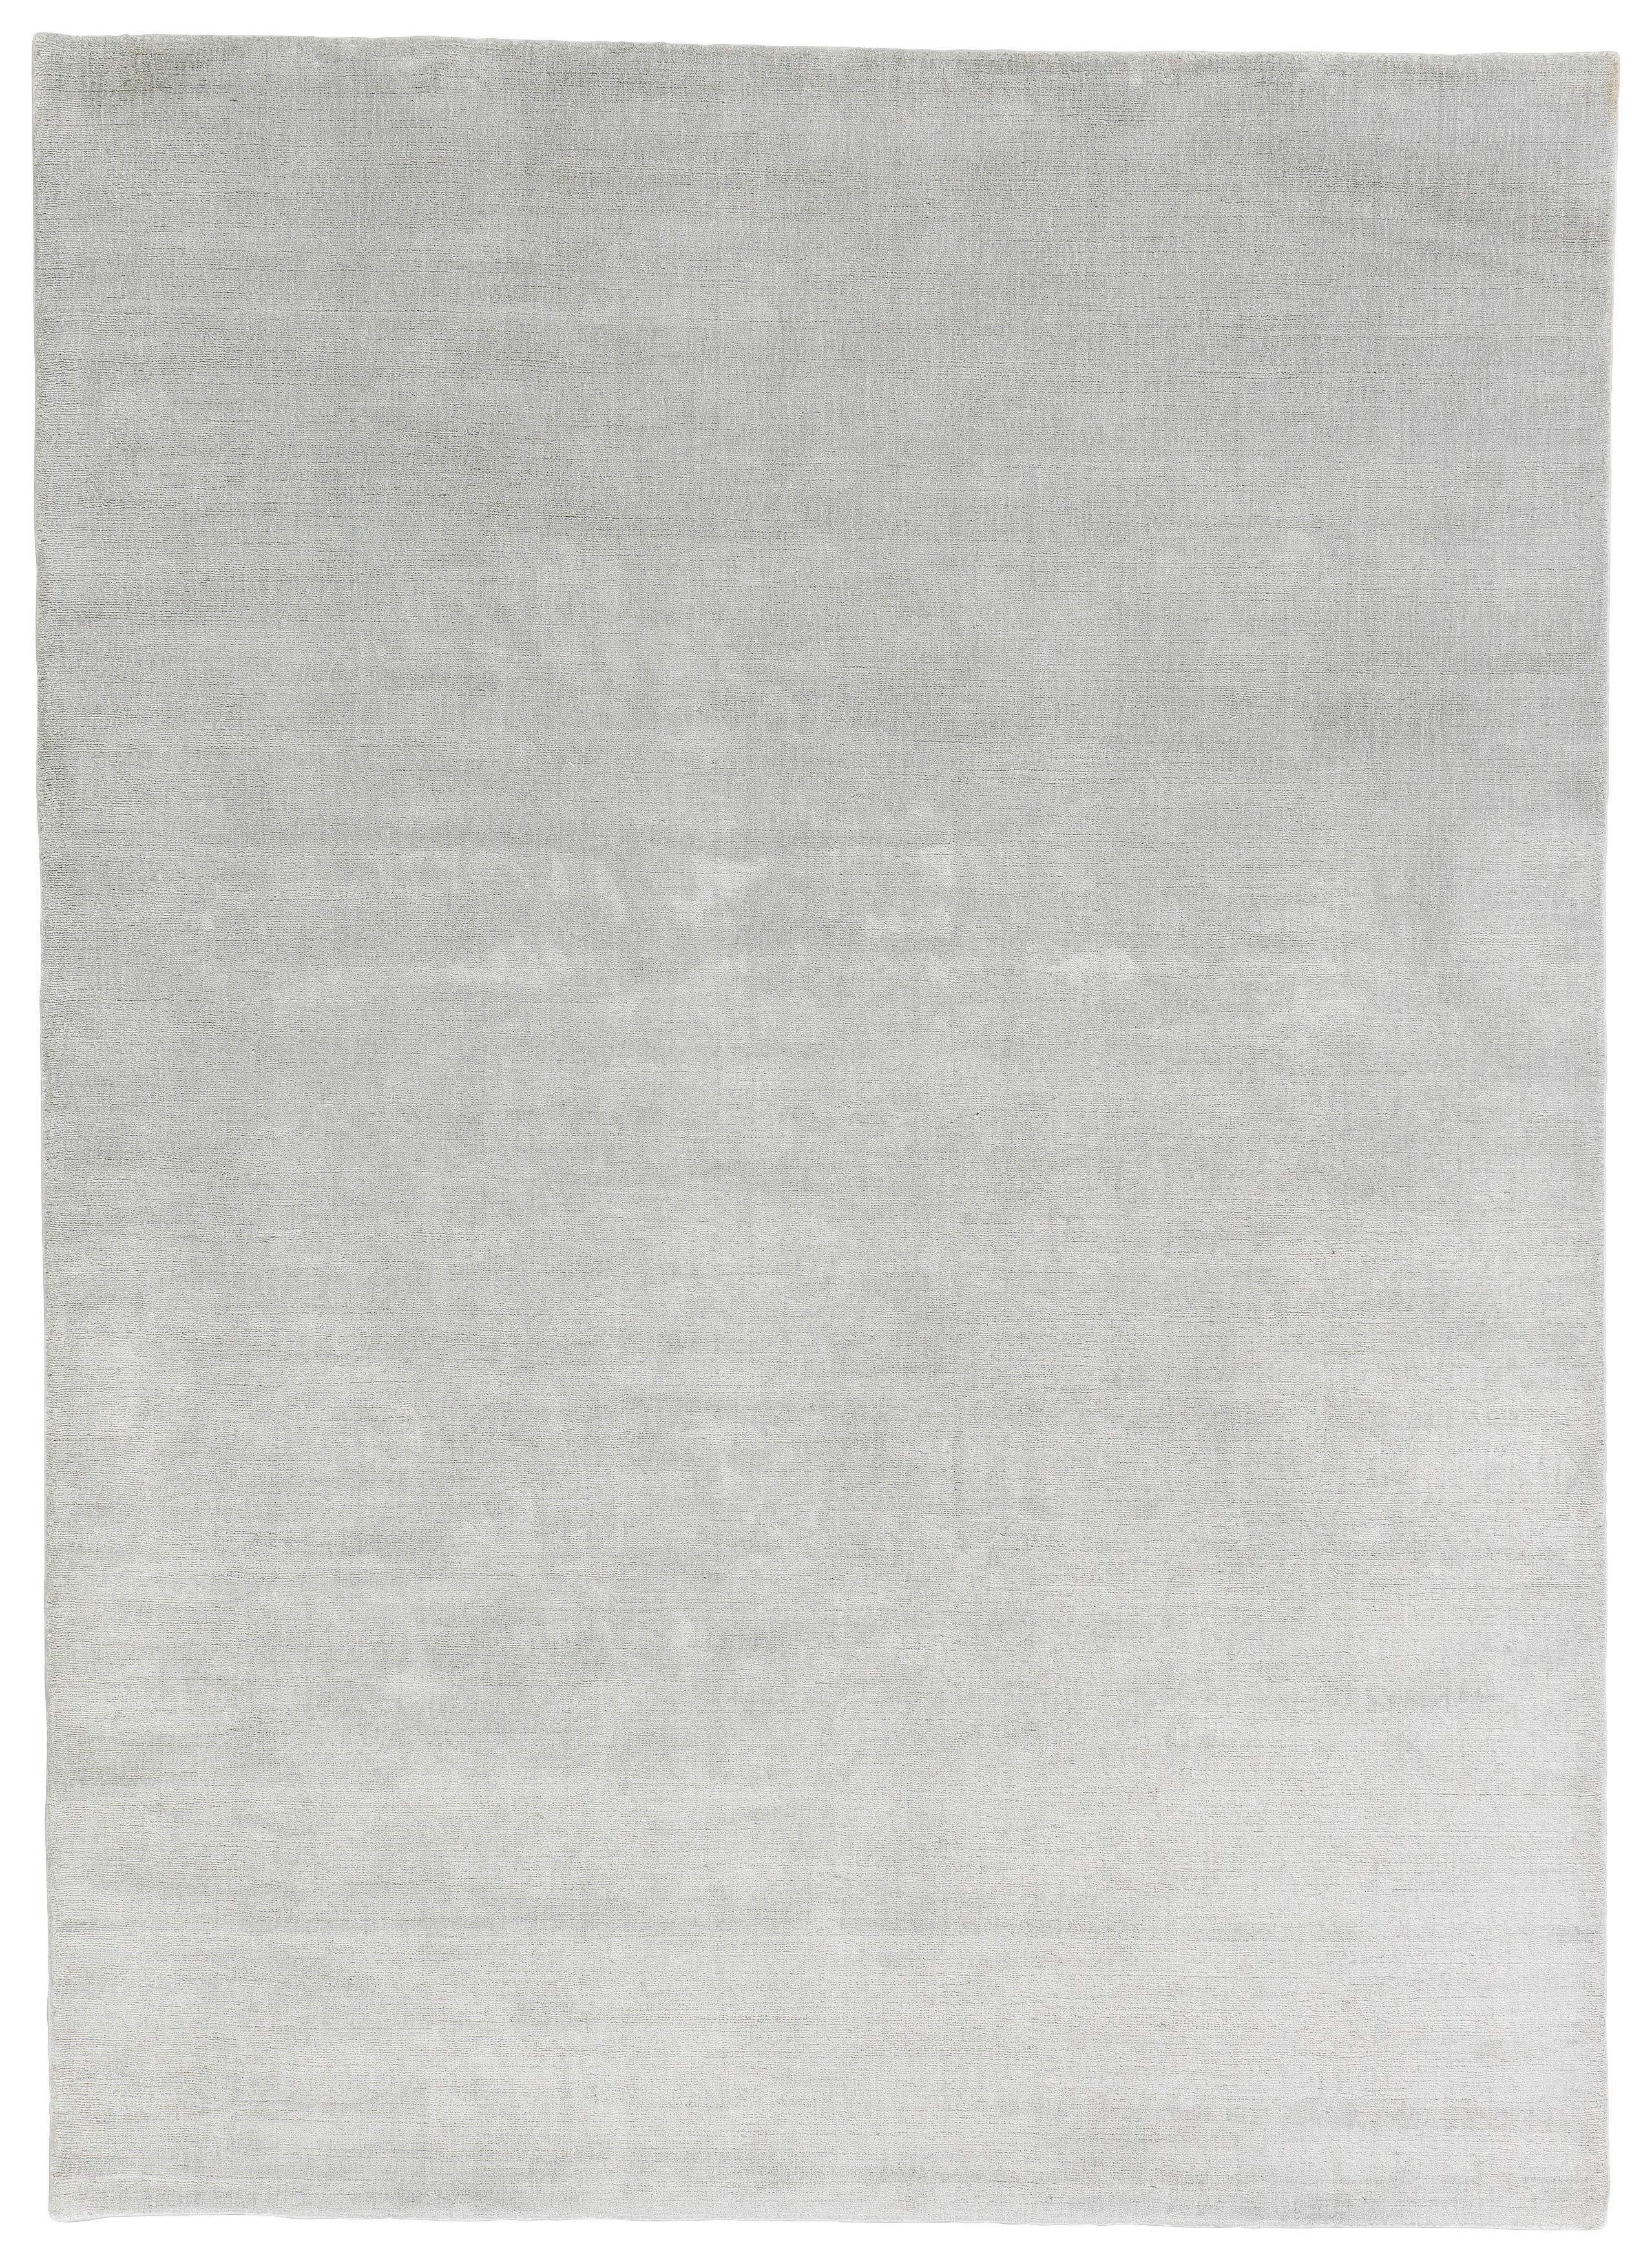 HANDWEBTEPPICH  140/200 cm  Silberfarben   - Silberfarben, Basics, Textil (140/200cm) - Schöner Wohnen